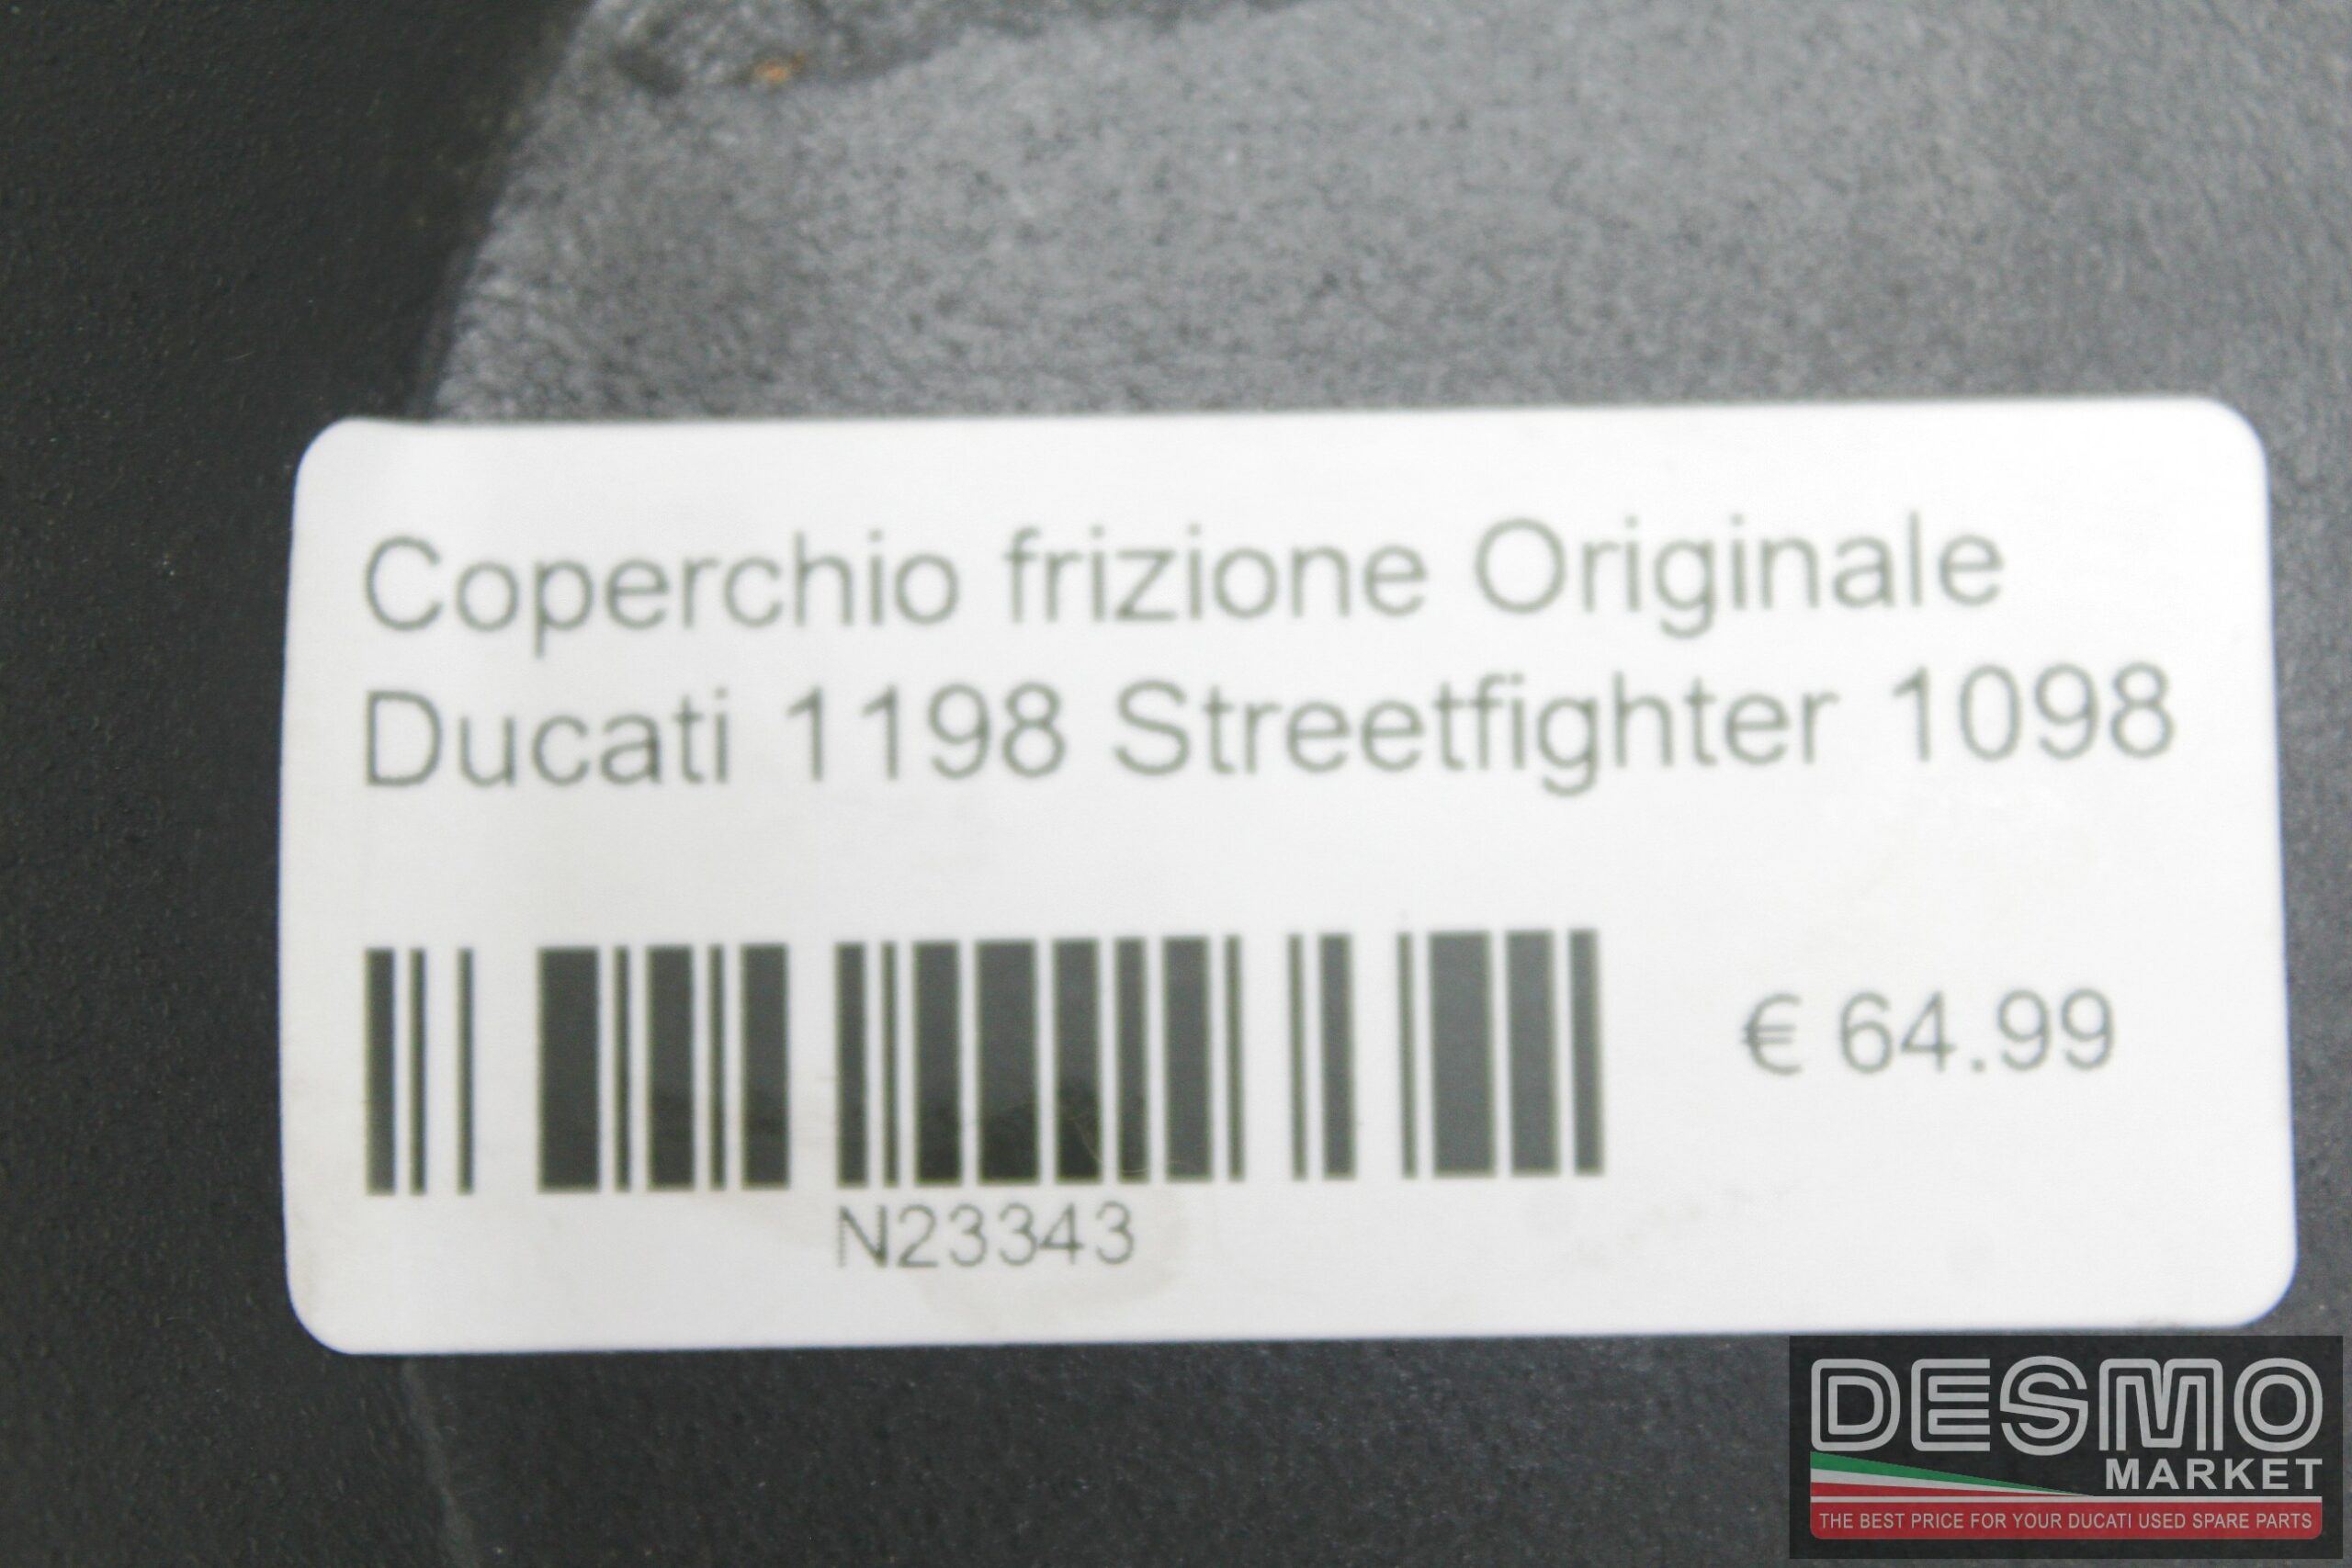 Coperchio frizione Originale Ducati 1198 Streetfighter 1098